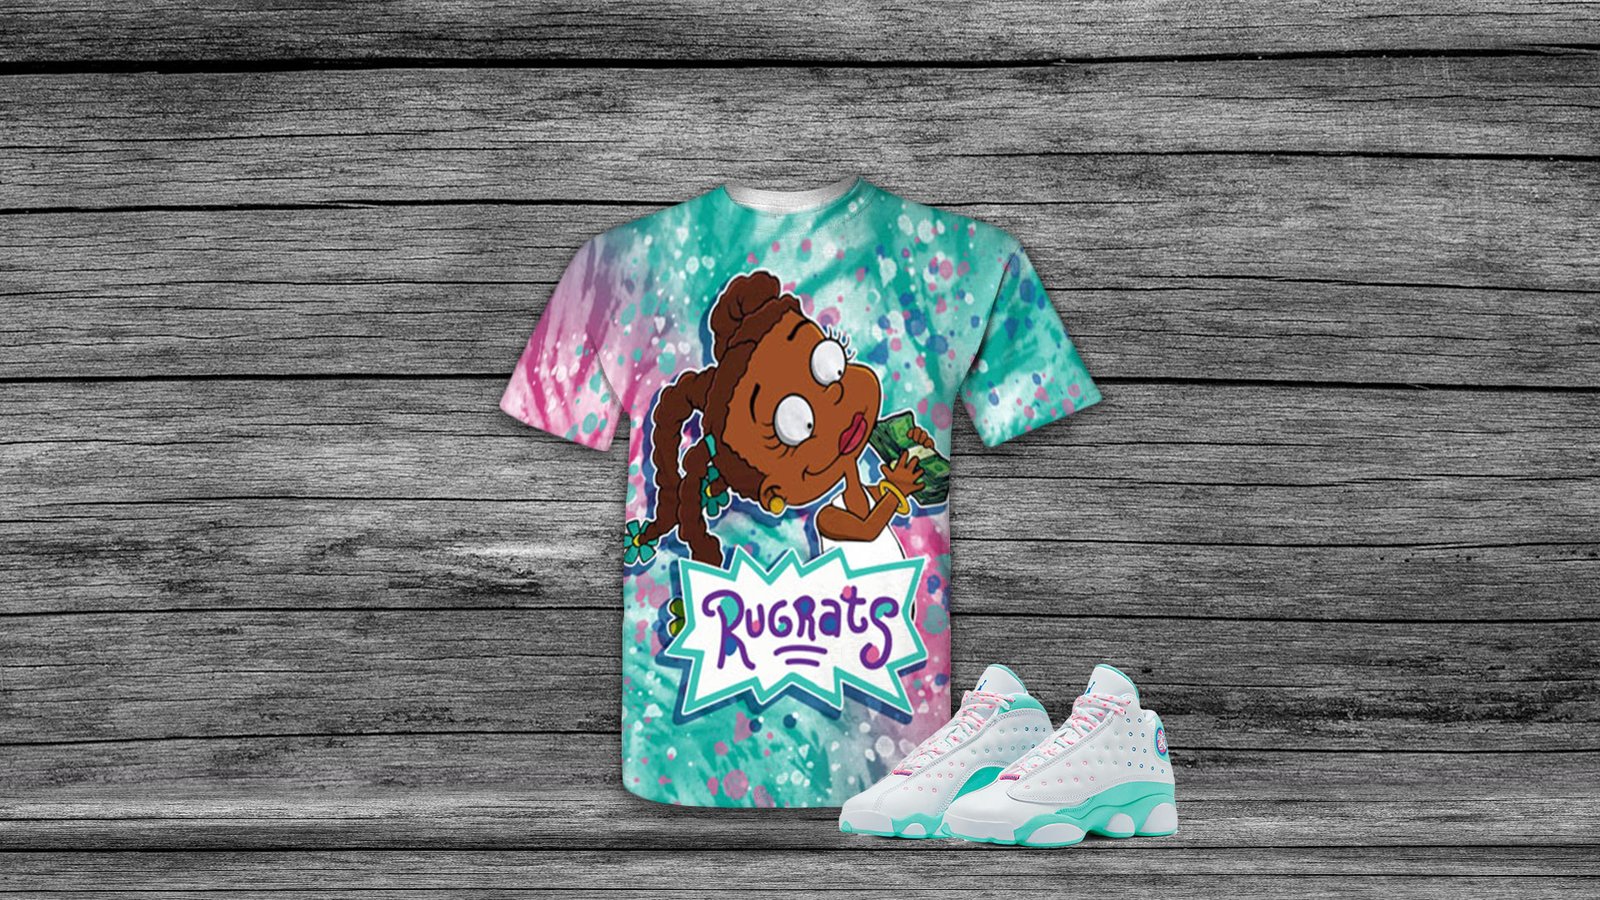 Rugrats Susie Shirt for Air Jordan 13 